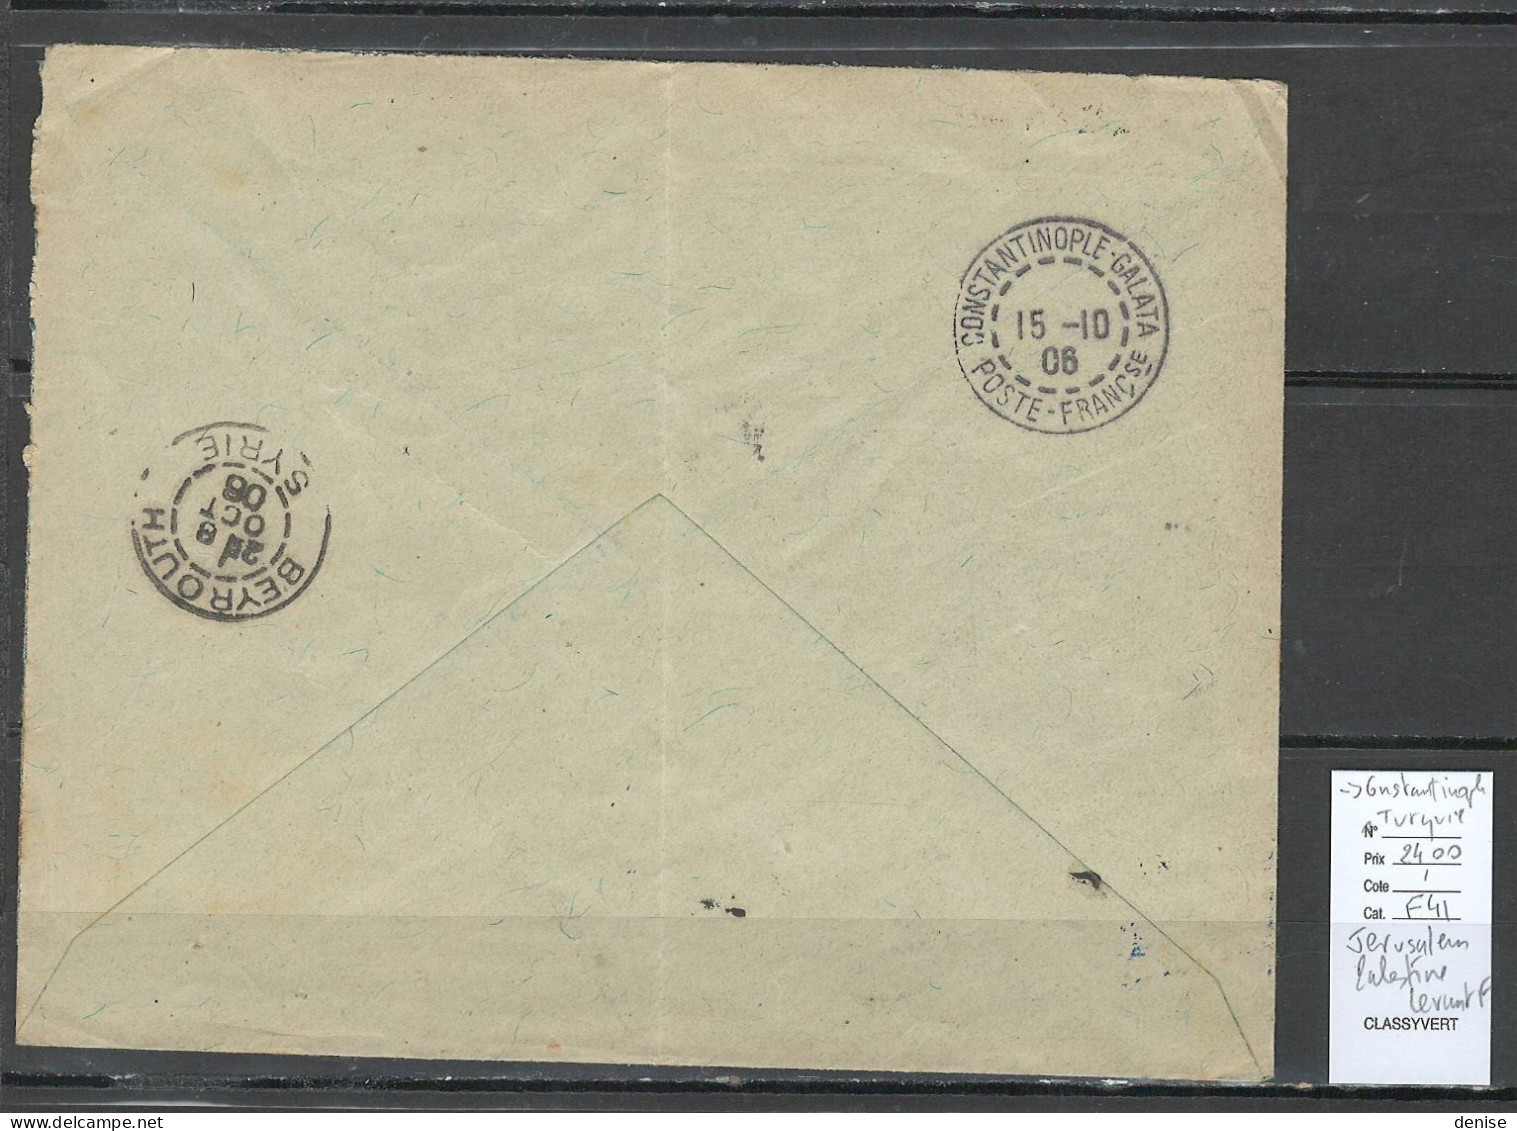 Levant - Lettre  Jerusalem Bureau Français - 1906 -pour Constantinople - Storia Postale